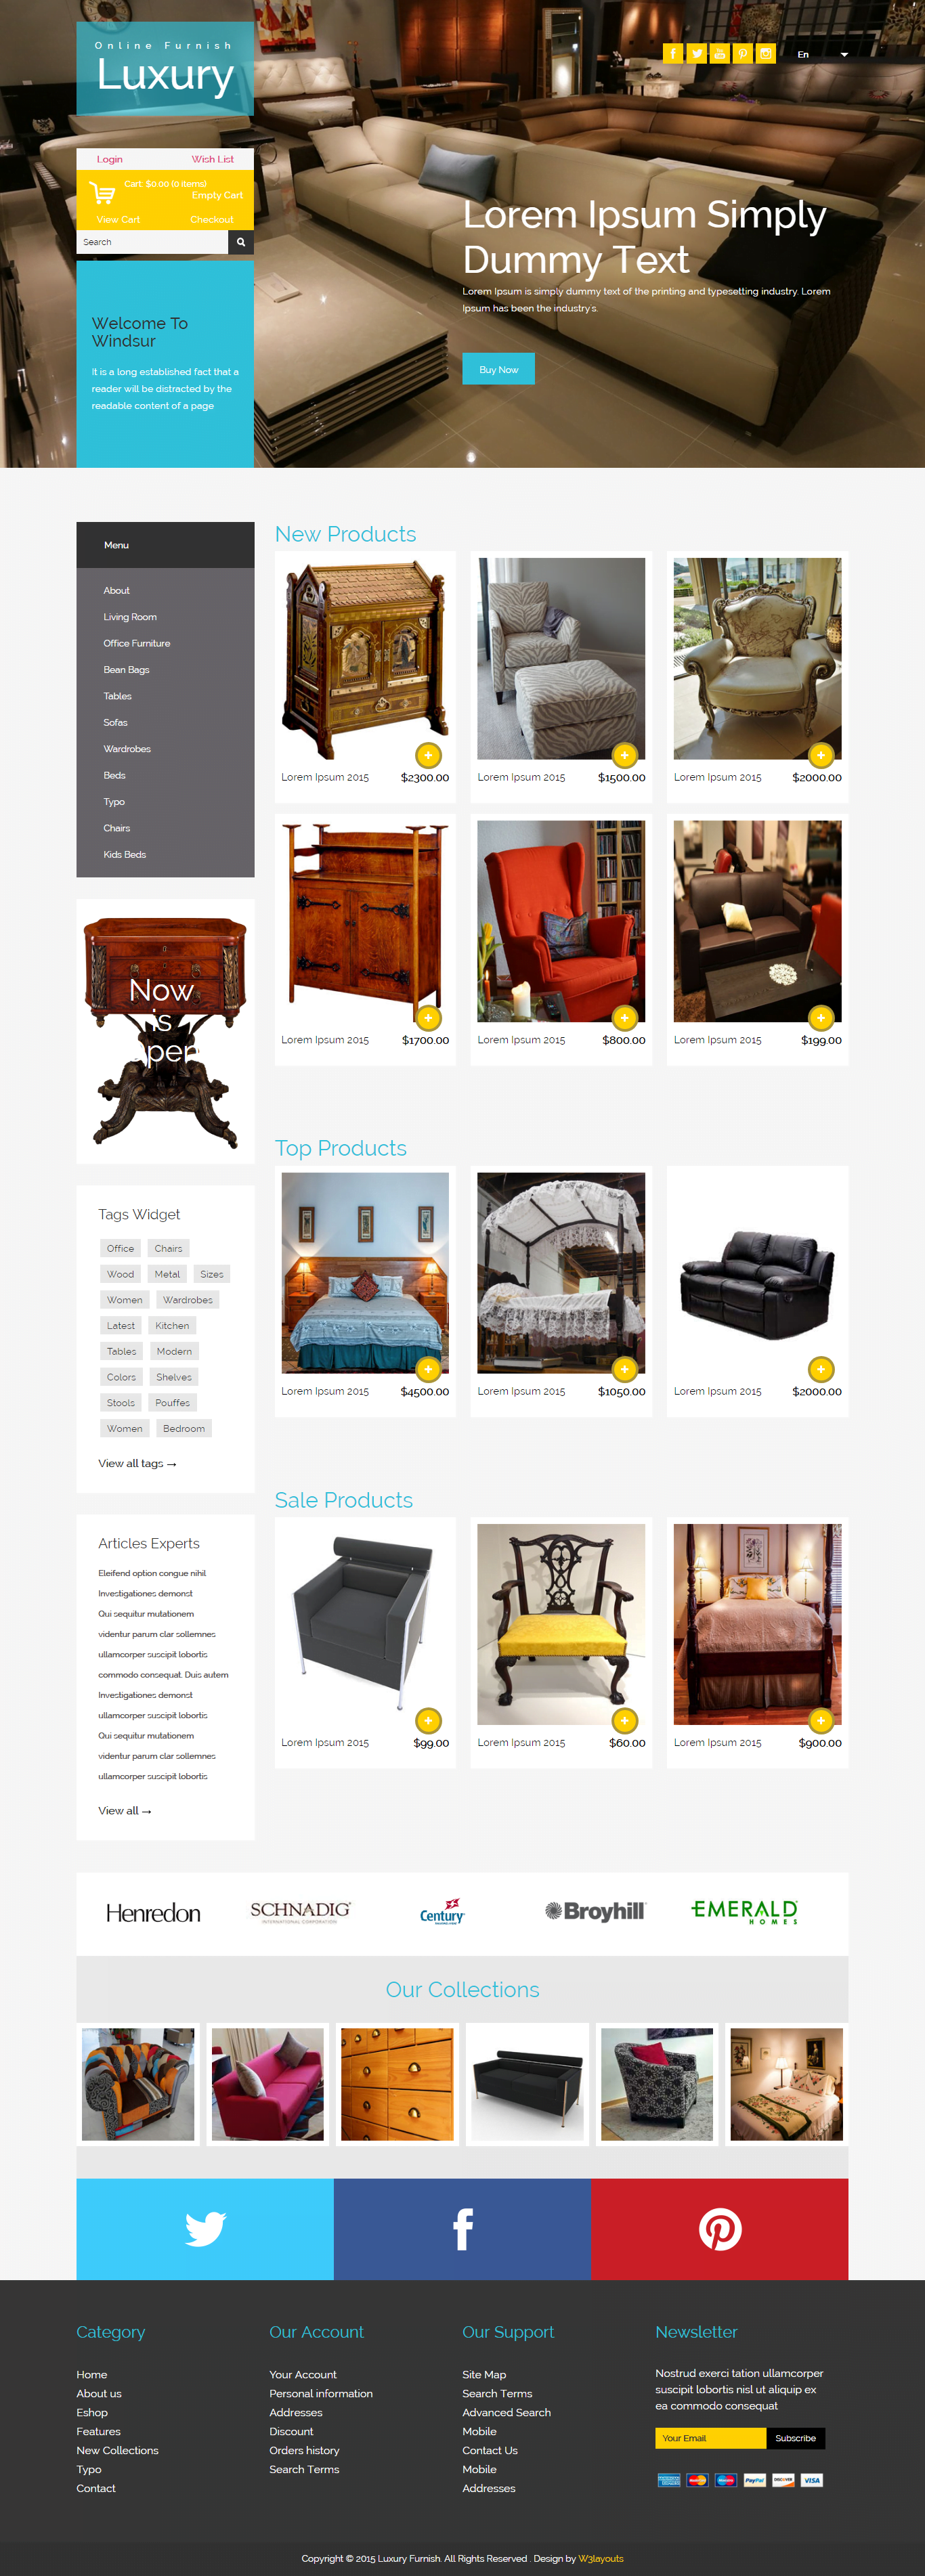 Mẫu website bán nội thất luxury